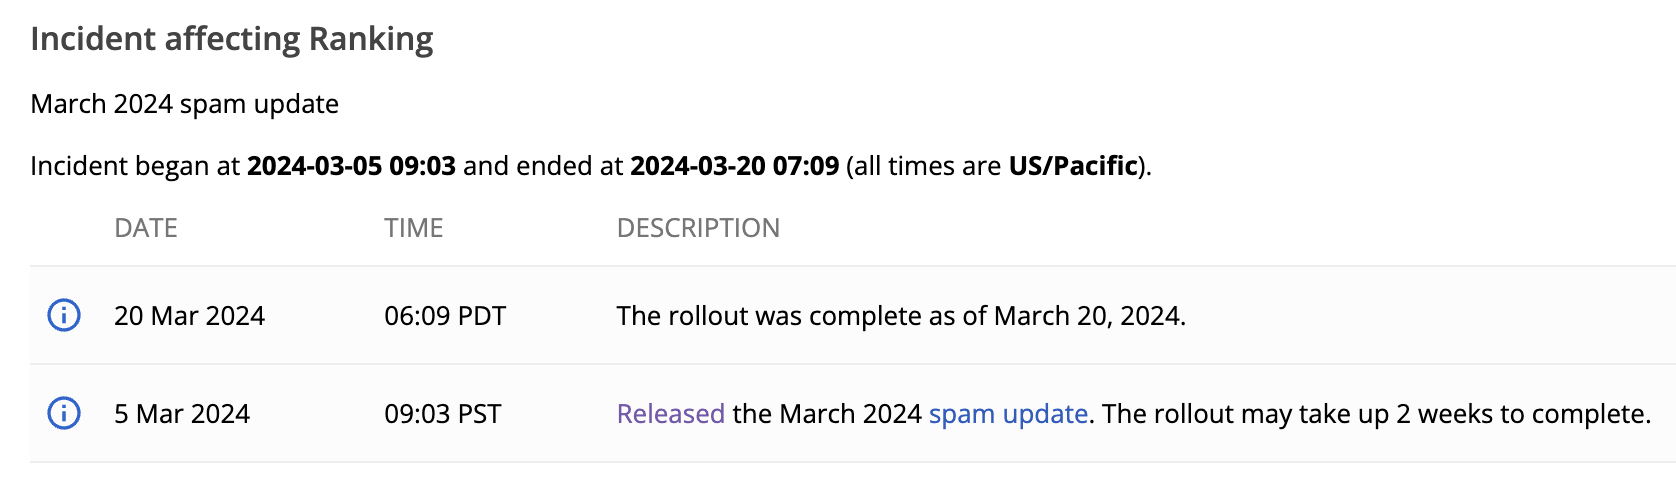 Google completa la actualización de spam de marzo, la actualización principal continúa